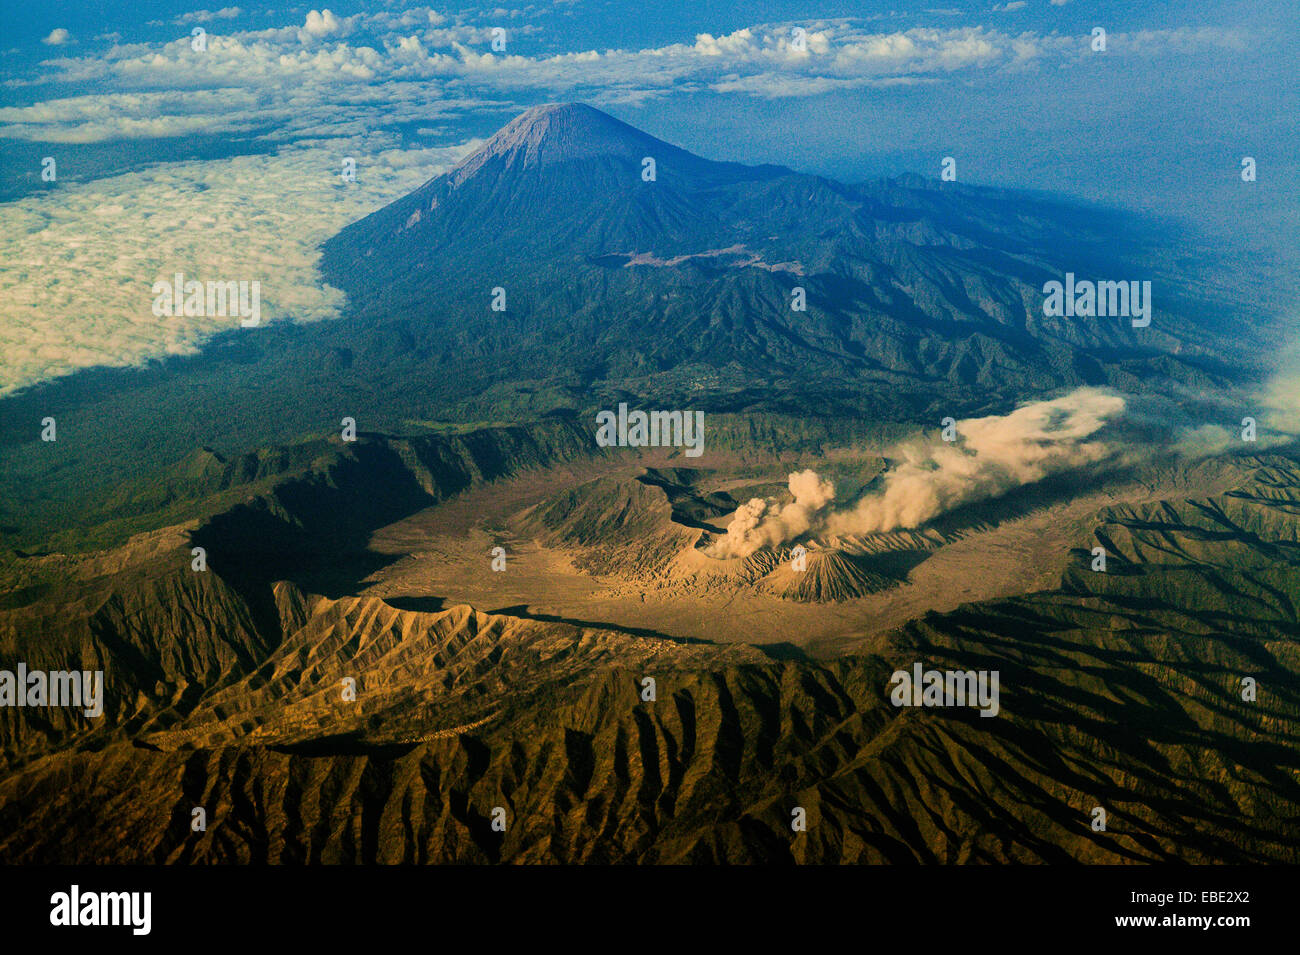 Parc national de Bromo Tengger Semeru vu d'en haut. Le mont Semeru (arrière-plan) est la plus haute montagne de l'île de Java, en Indonésie. Banque D'Images